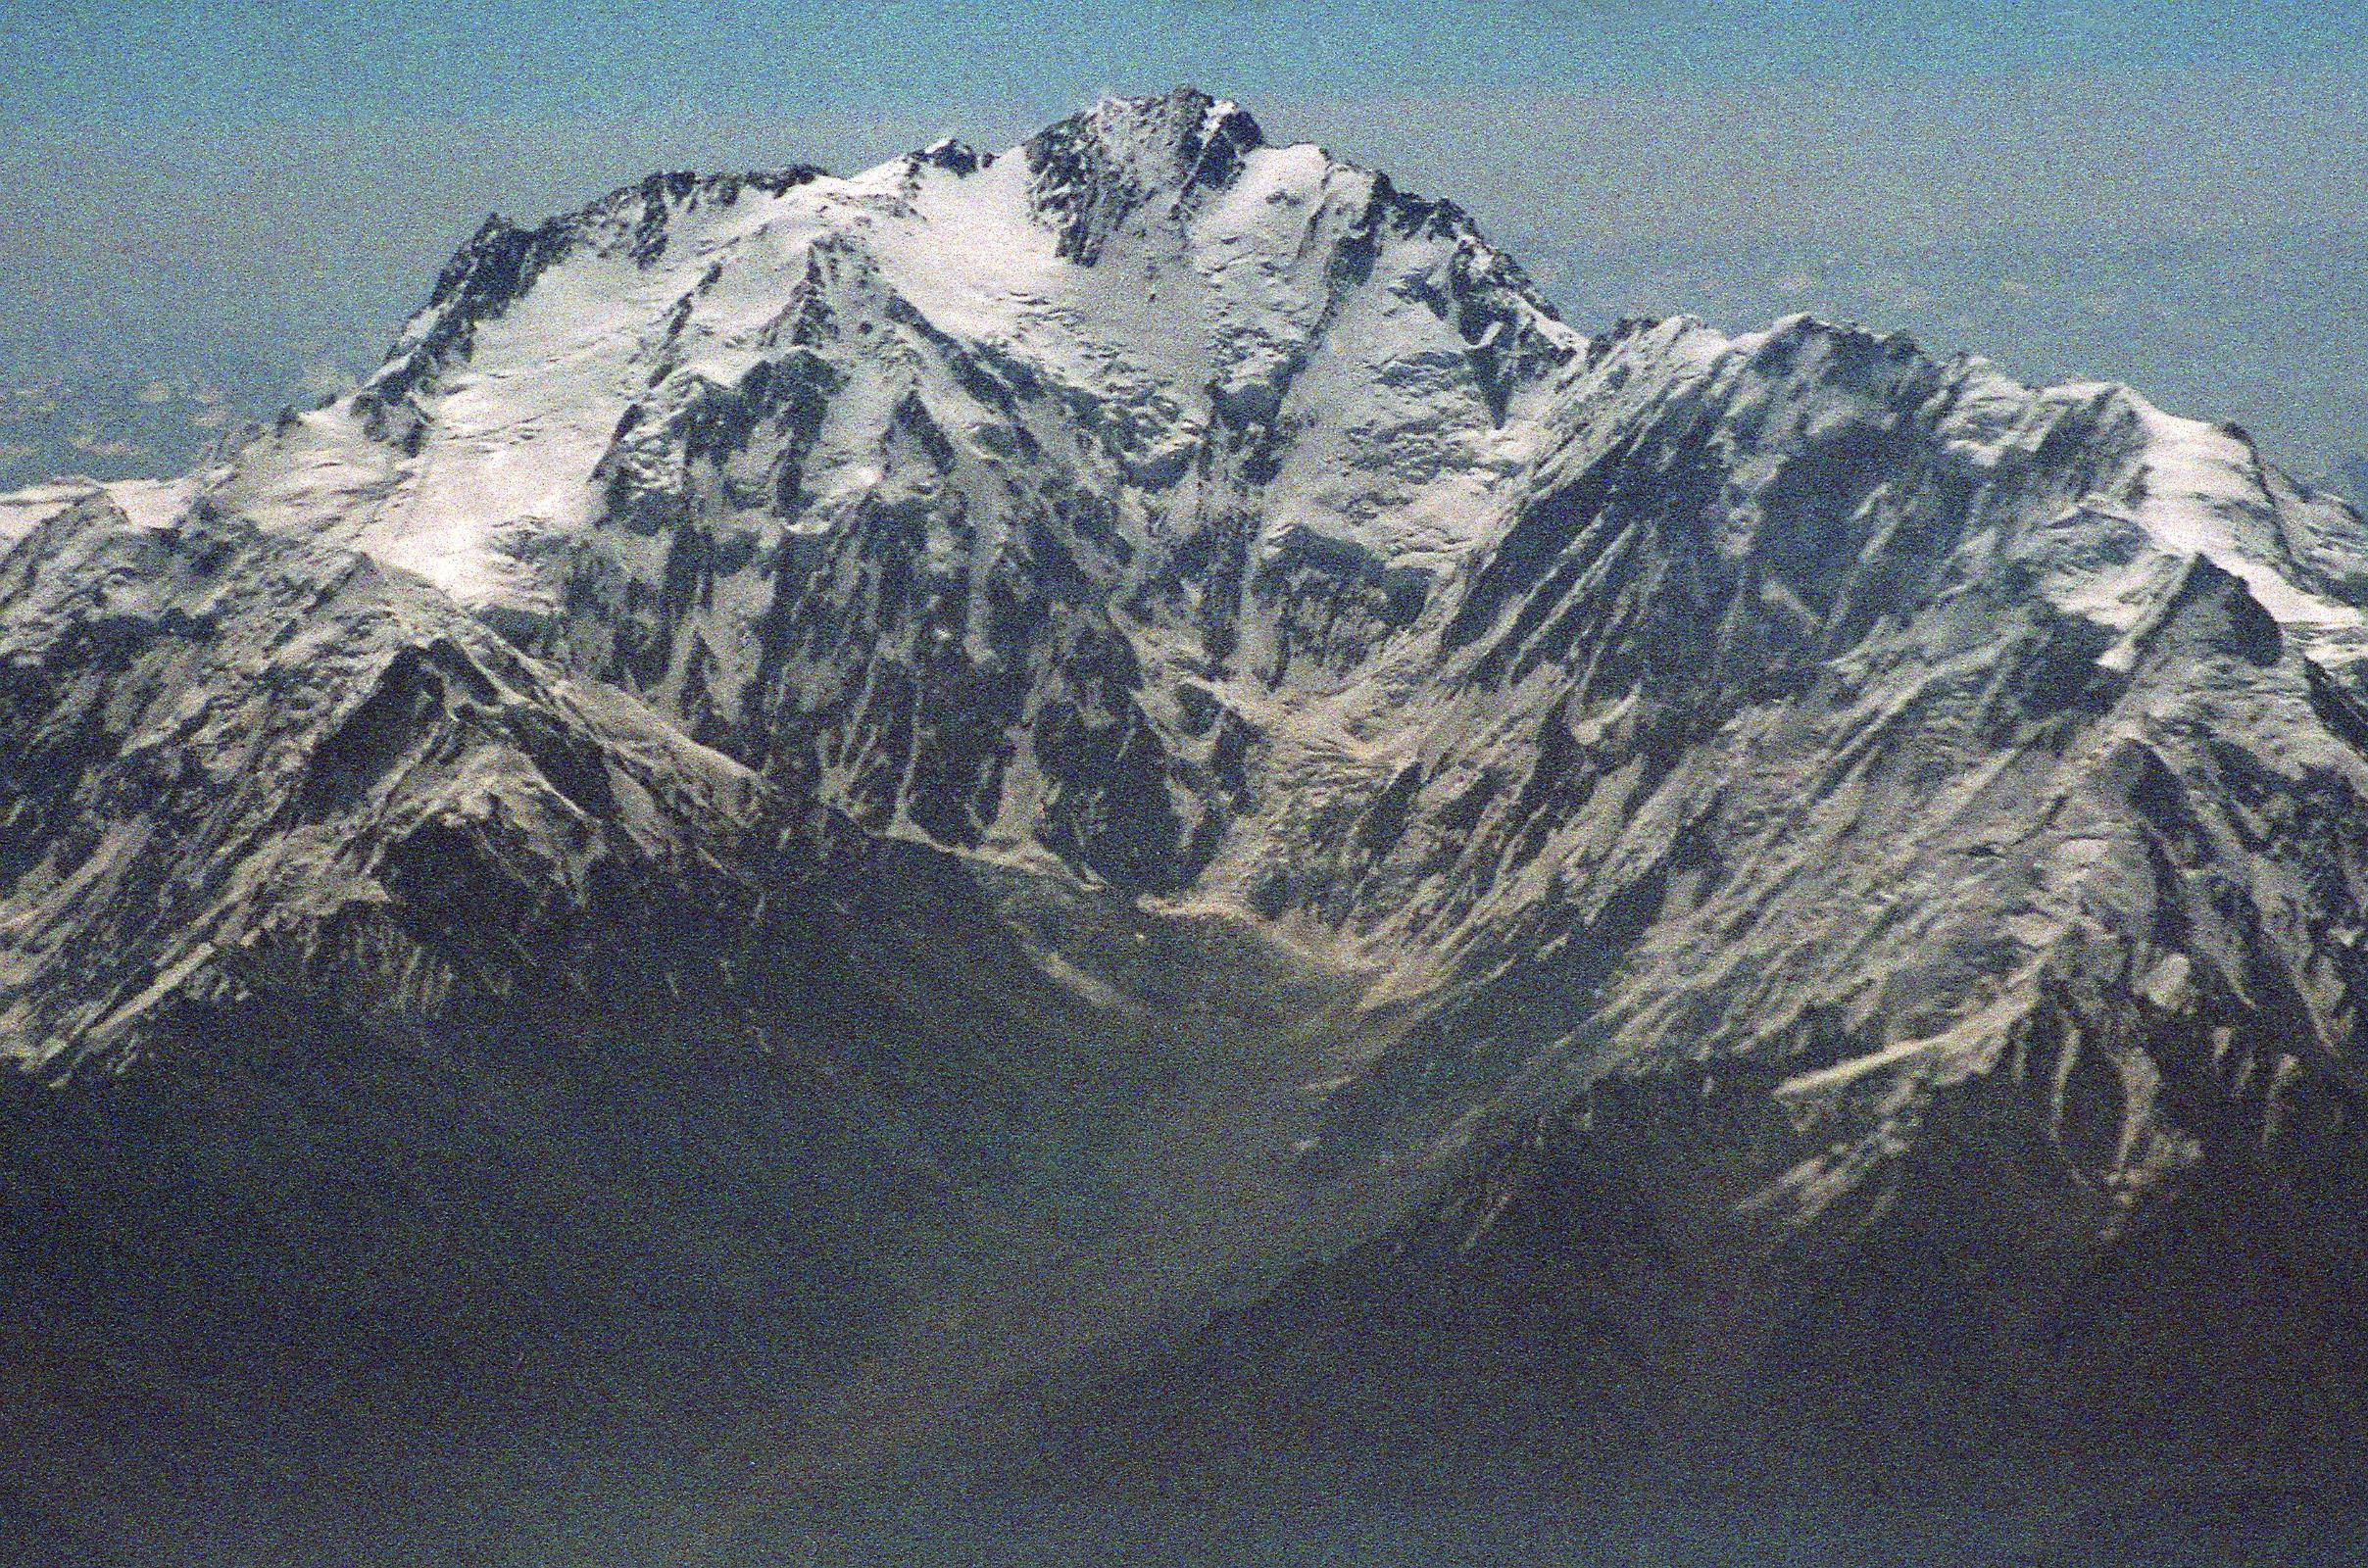 Нангапарбат (Нанга Парбат / Nanga Parbat / 8126 м,— девятый по высоте восьмитысячник мира. Вид на Западную стену - сторону Диамир (Diamir Face)